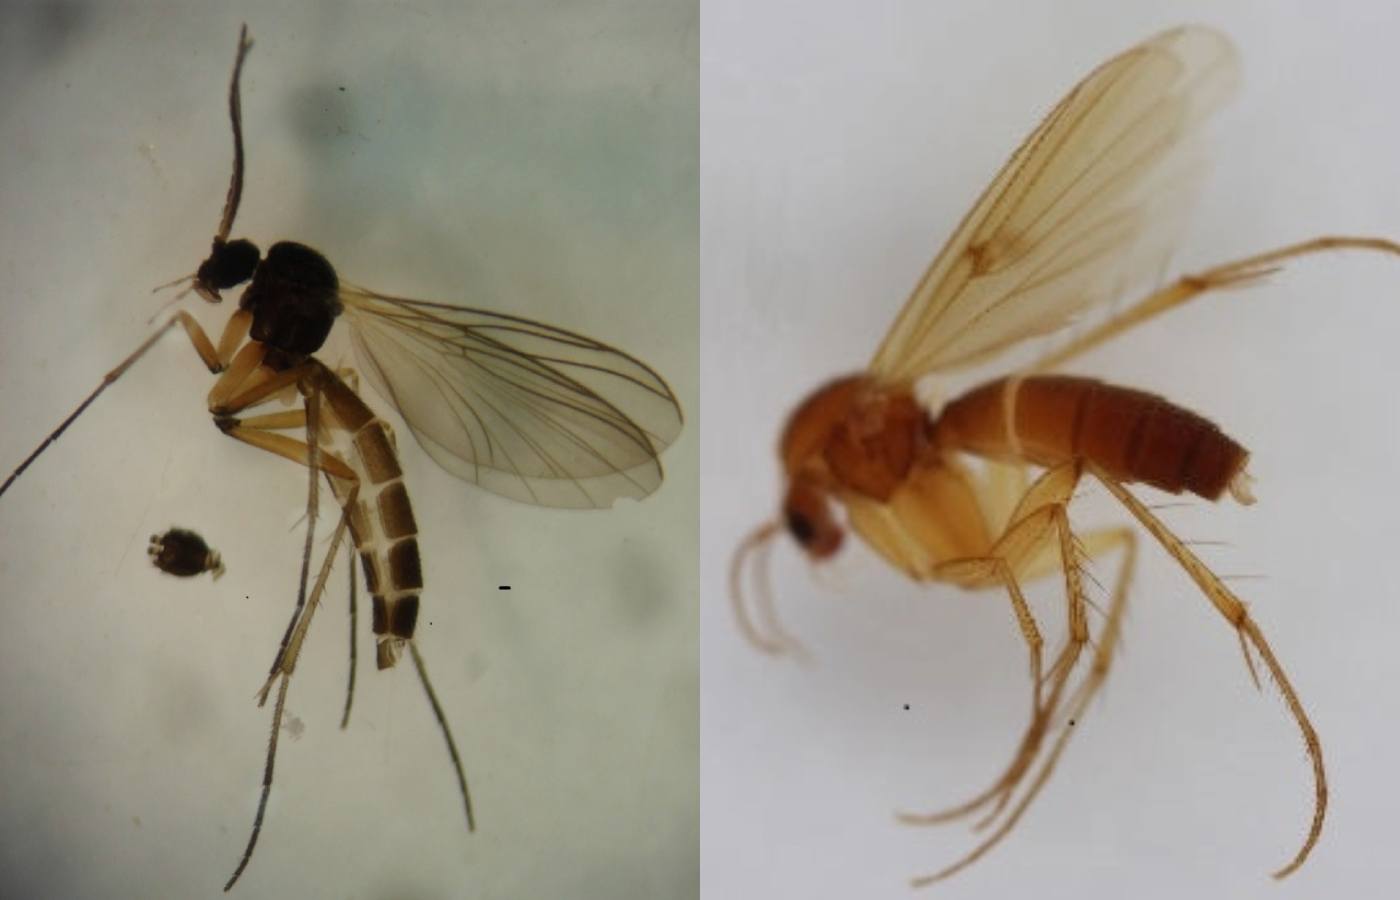 Boletina gusakovae (left) and Mycetophila idonea (right). 